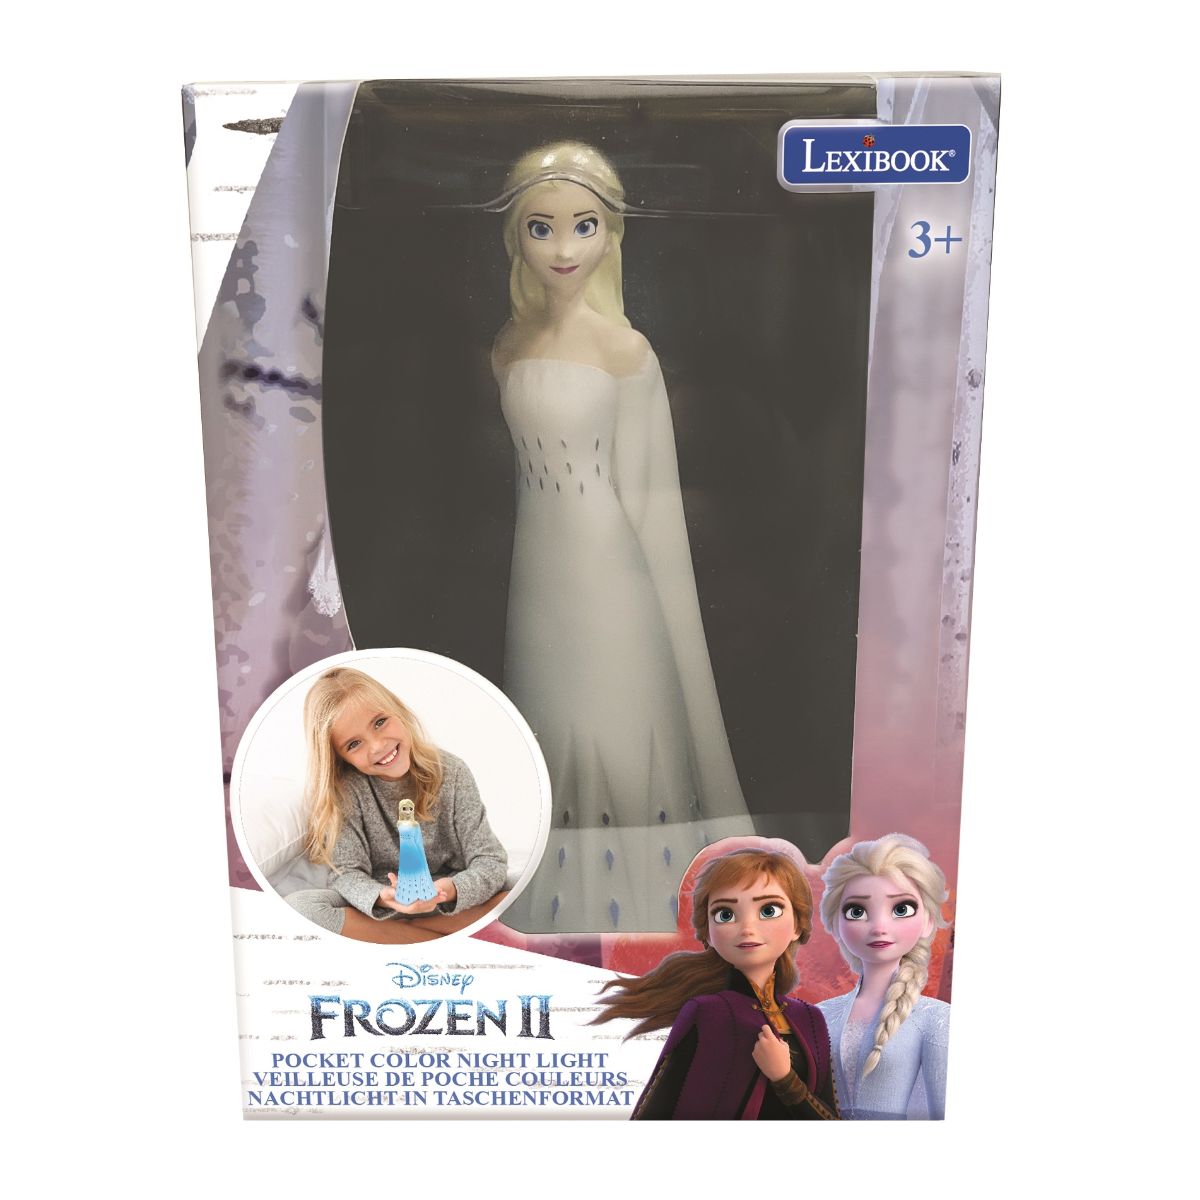 Lampa 3D, Lexibook, cu efecte luminoase, Disney Frozen, 13 cm Lexibook imagine noua